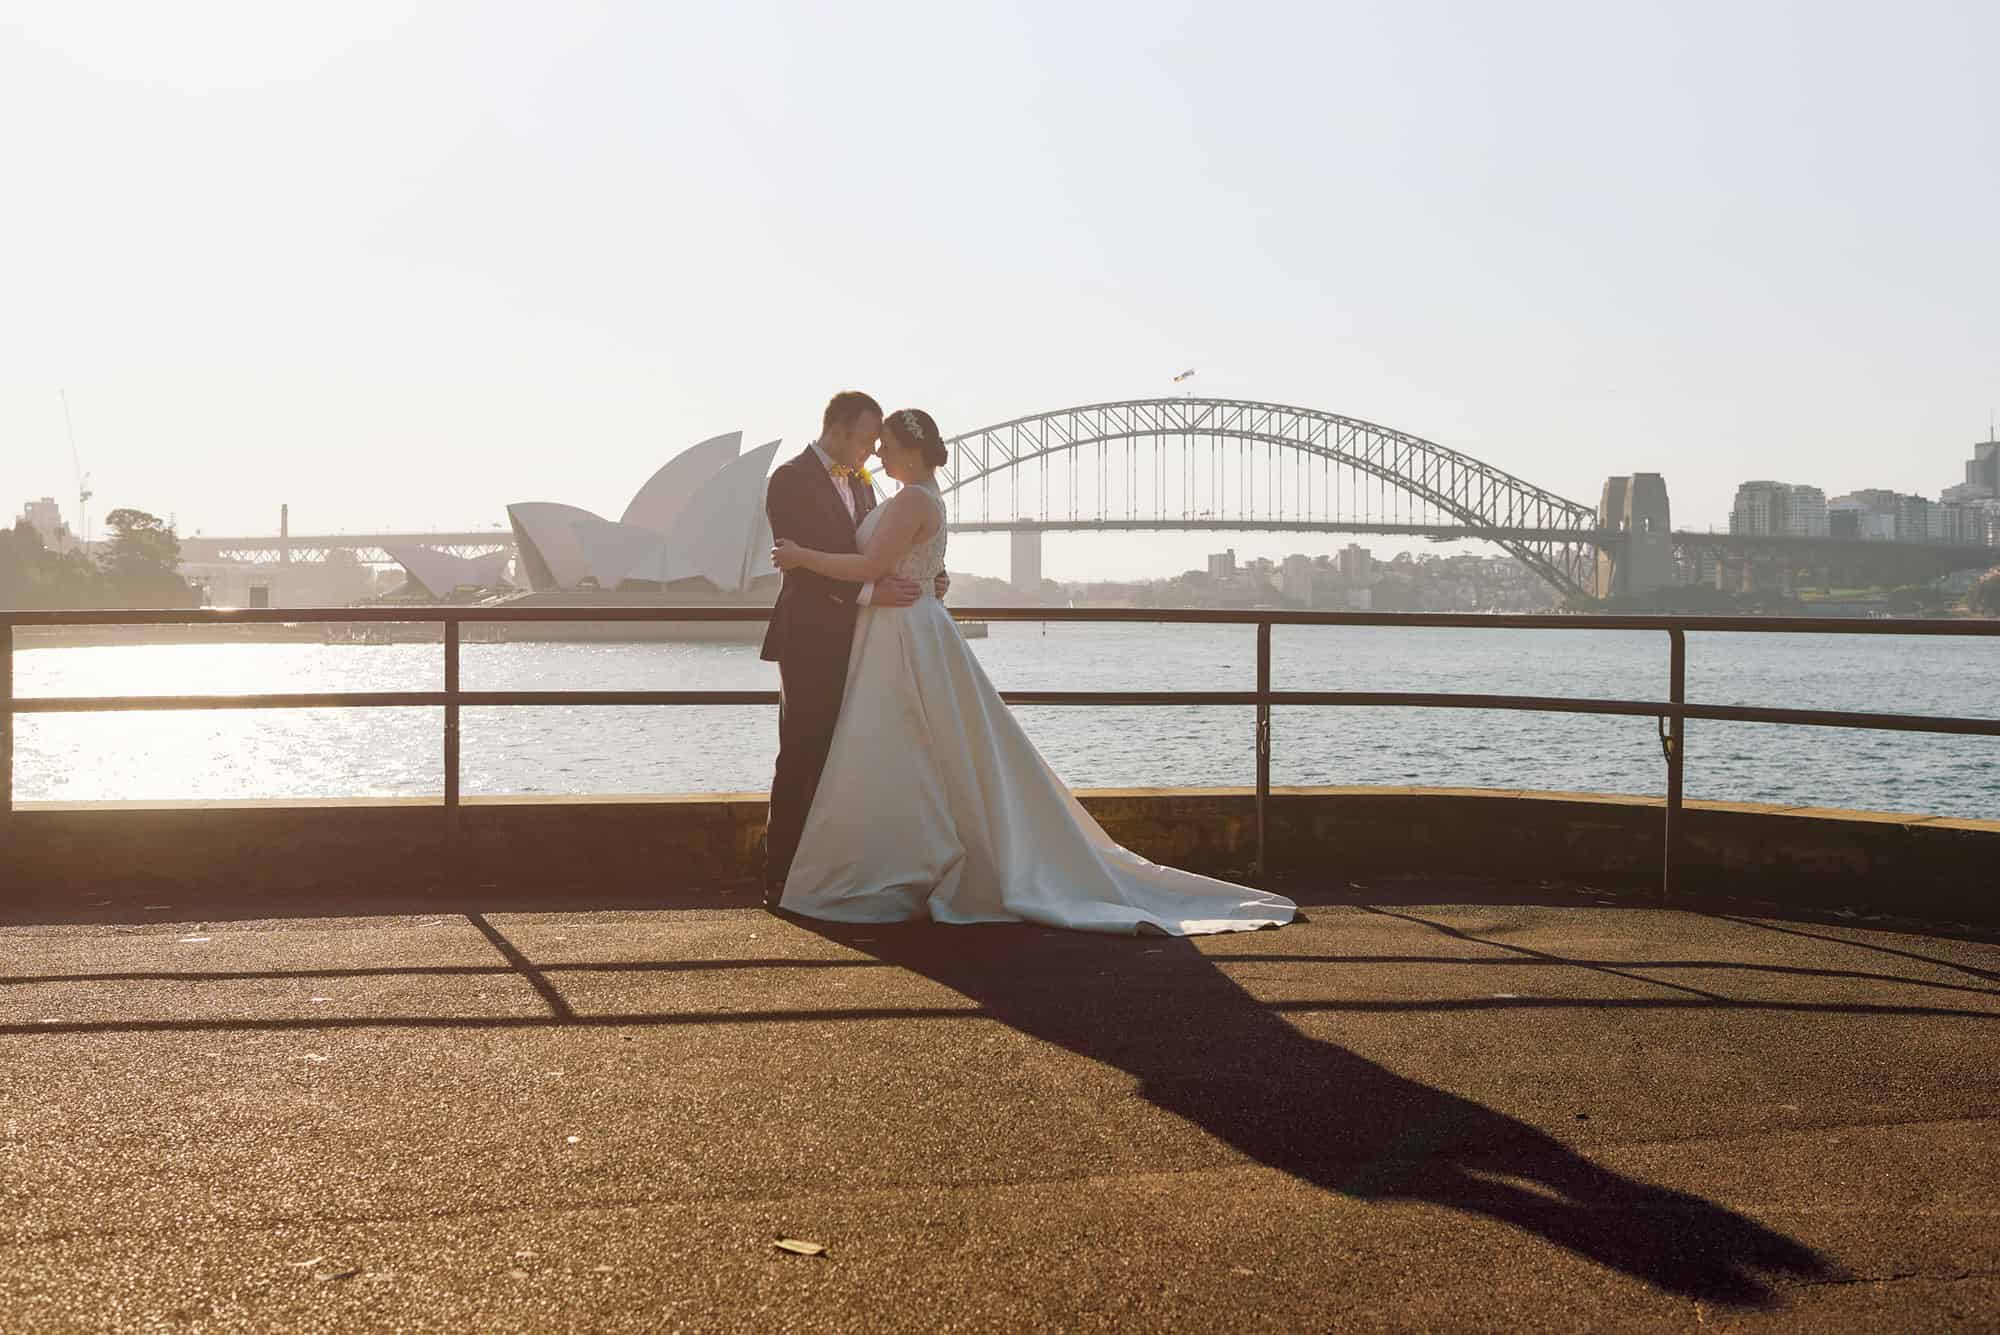 Wedding photos overlooking Sydney Harbour